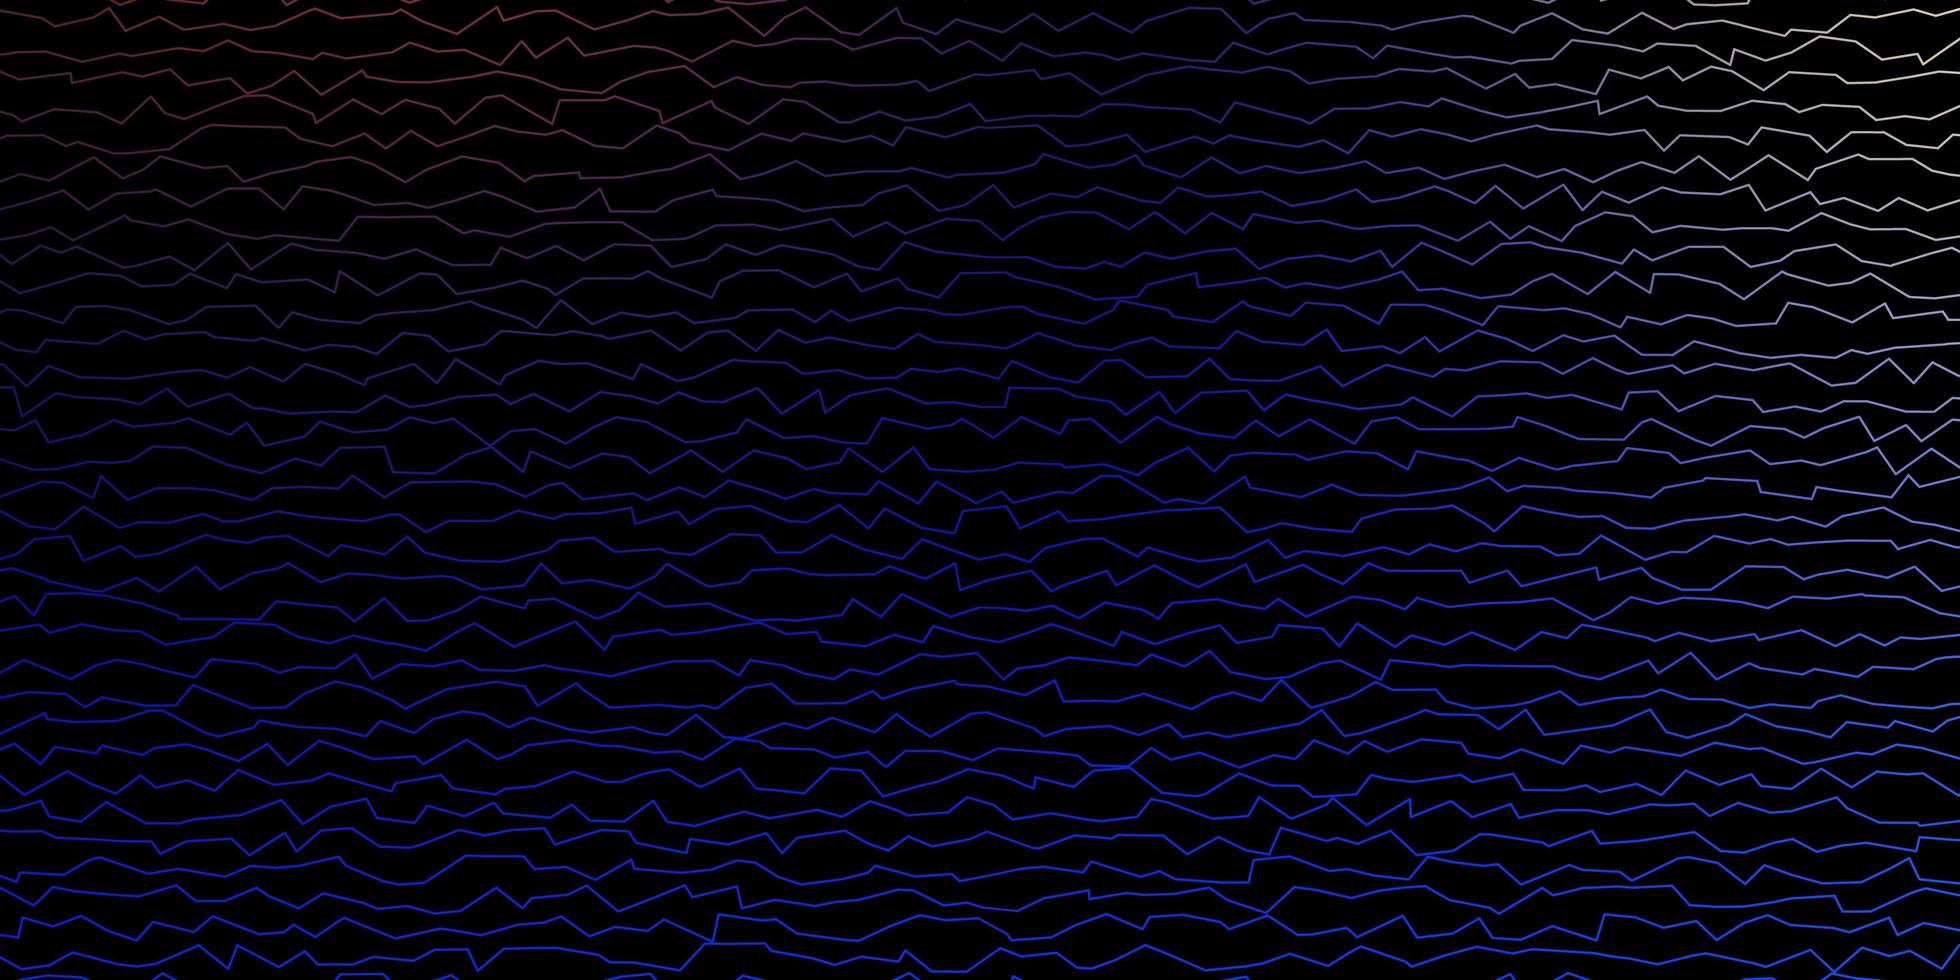 mörkblå, gul vektorbakgrund med kurvor. helt ny färgglad illustration med böjda linjer. mönster för reklam, annonser. vektor